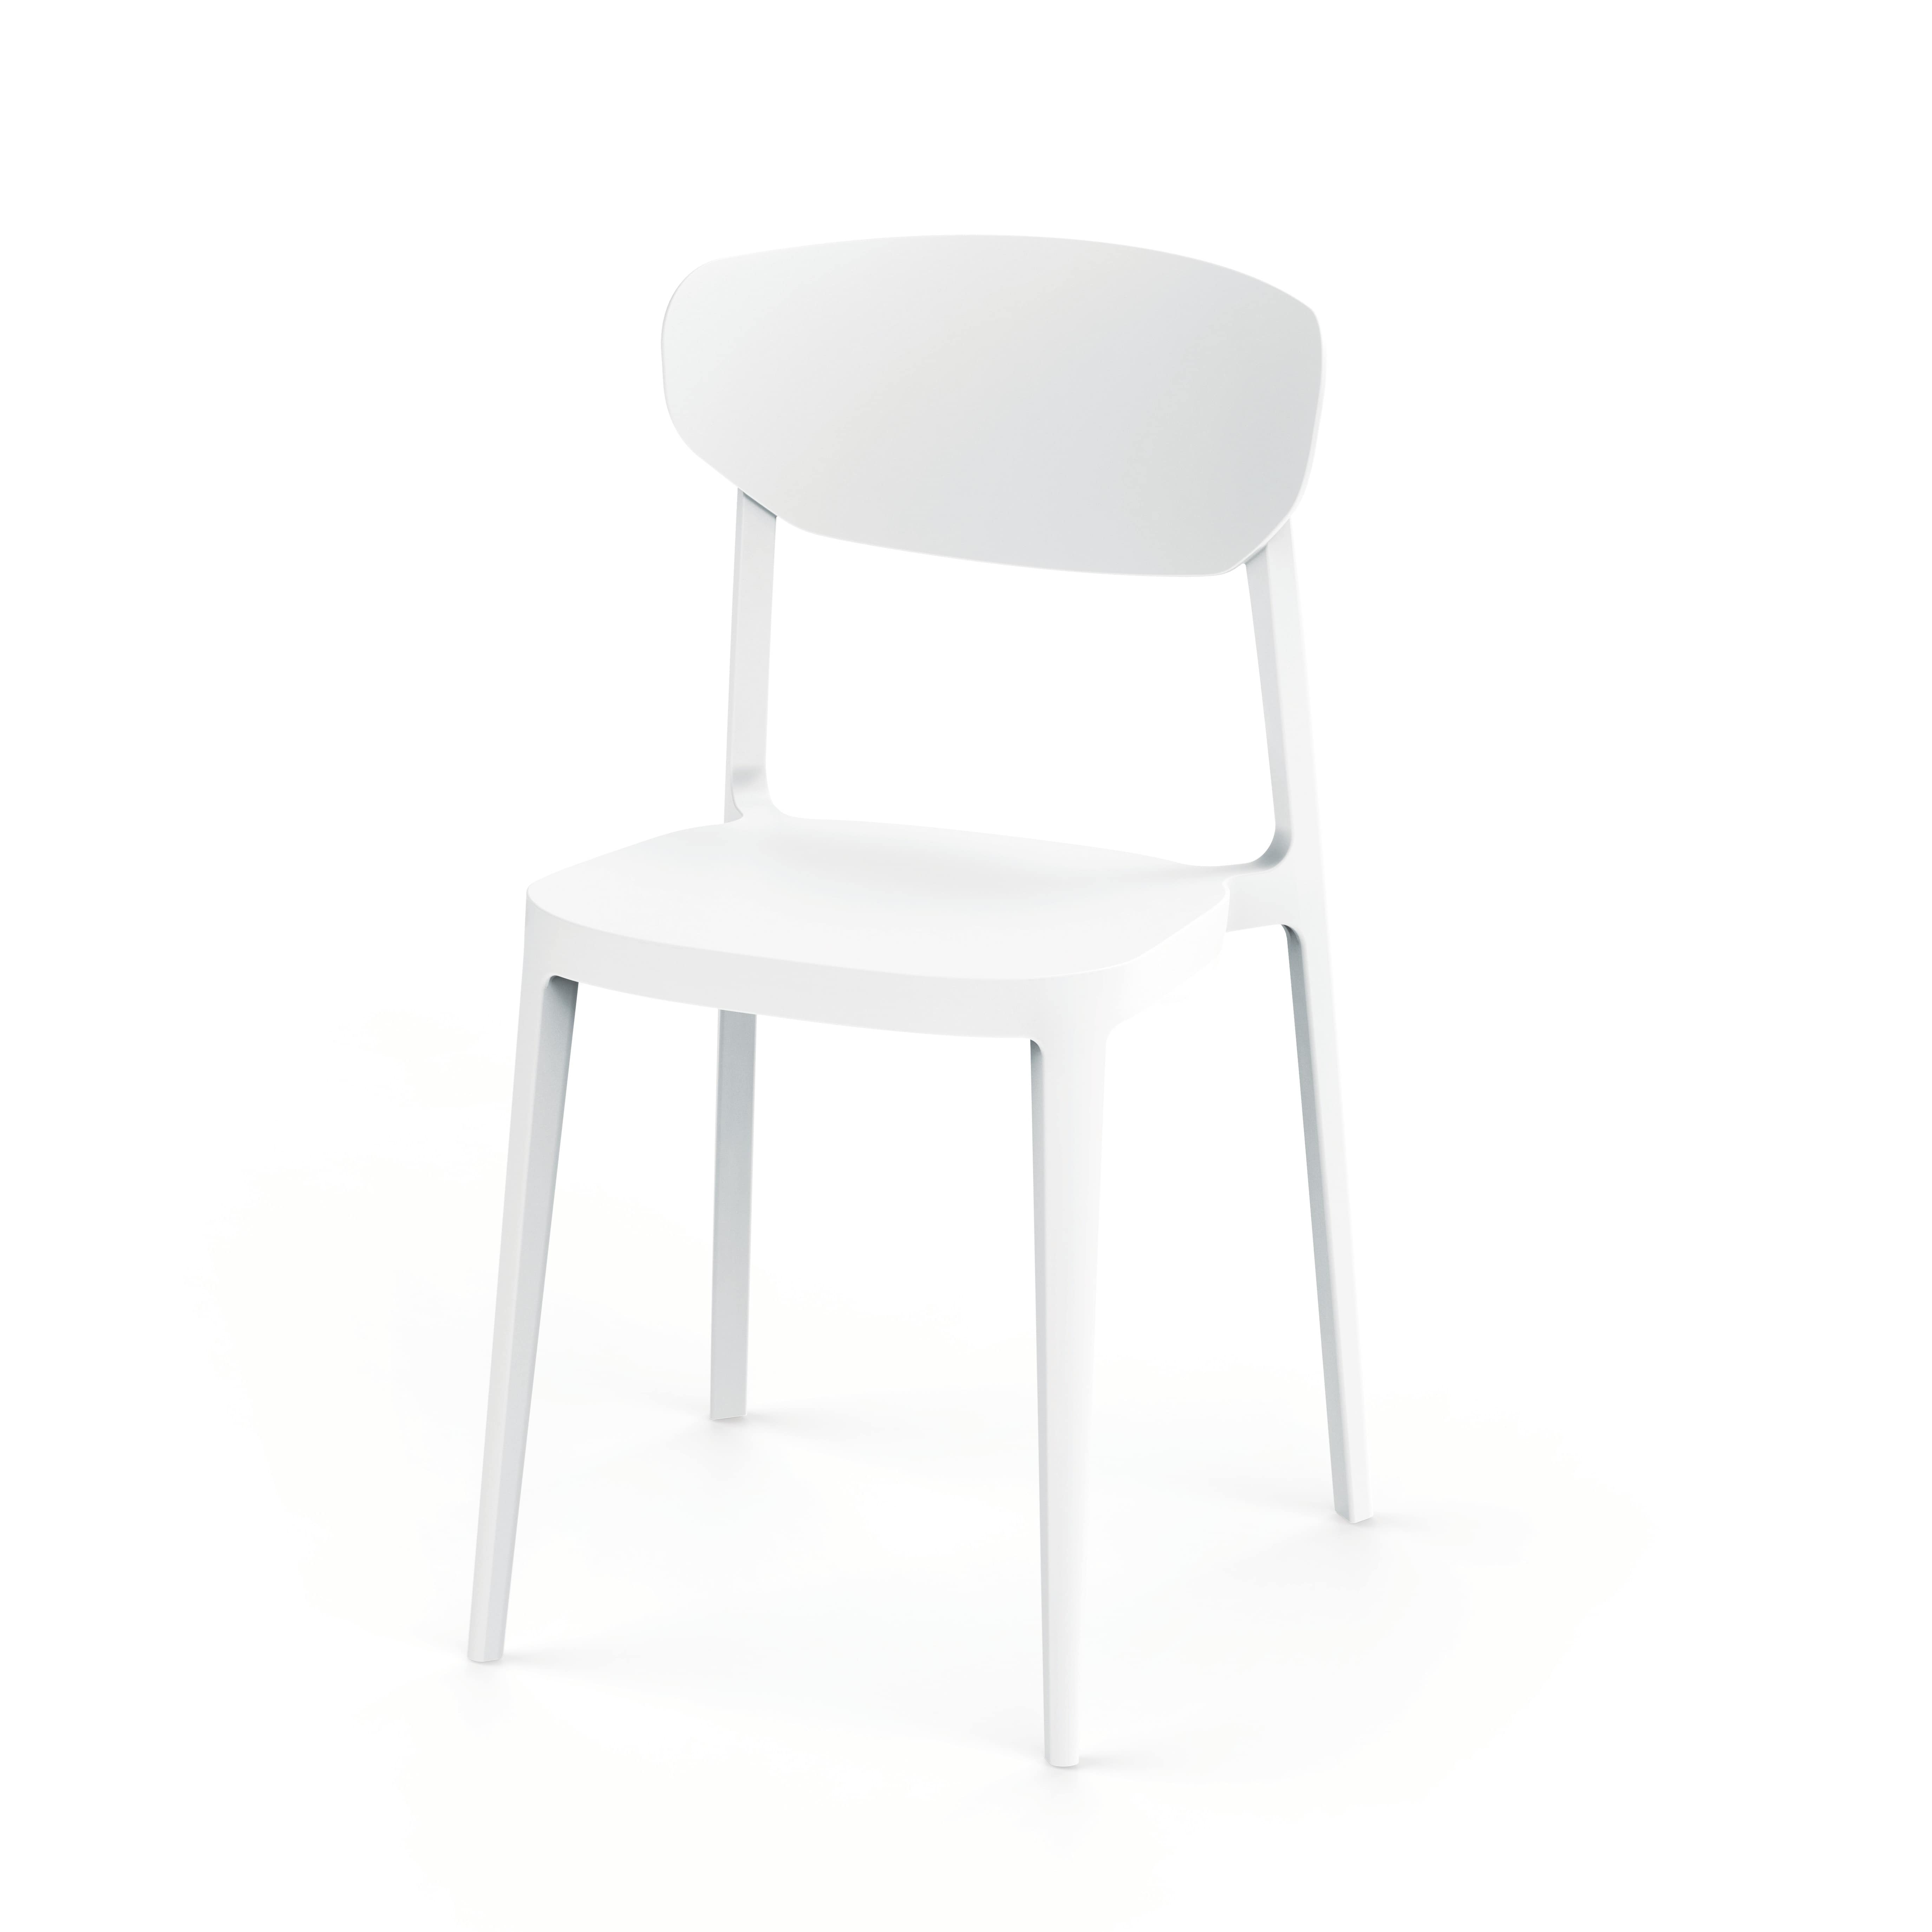 Chaise empilable blanche en plastique, chaise en résine blanche